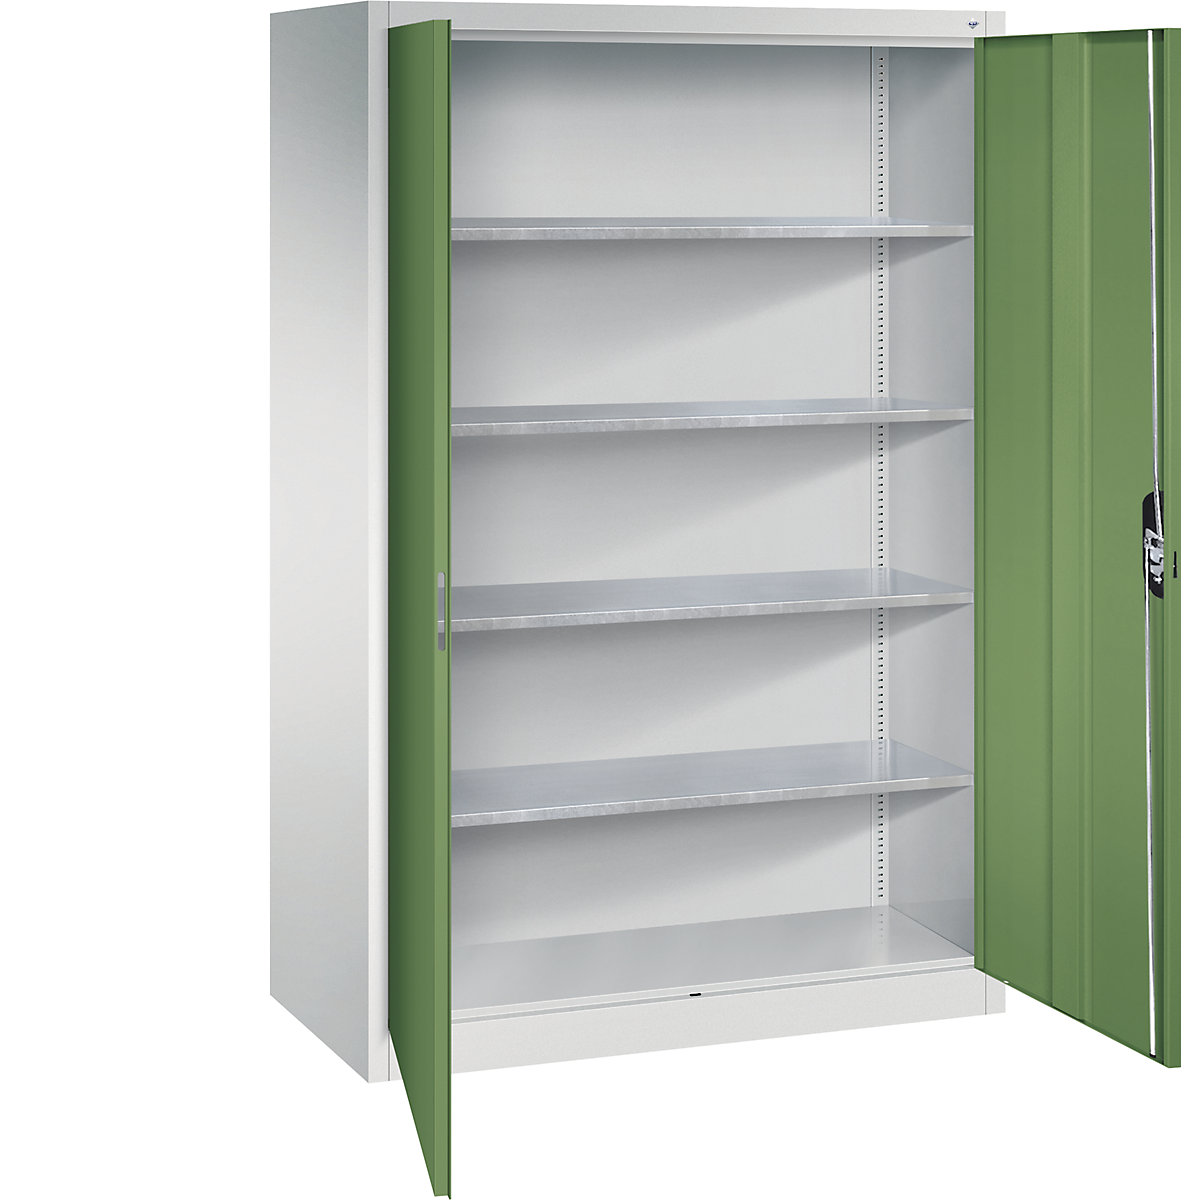 Workshop double door cupboard – C+P, HxWxD 1950 x 1200 x 600 mm, light grey / reseda green-13